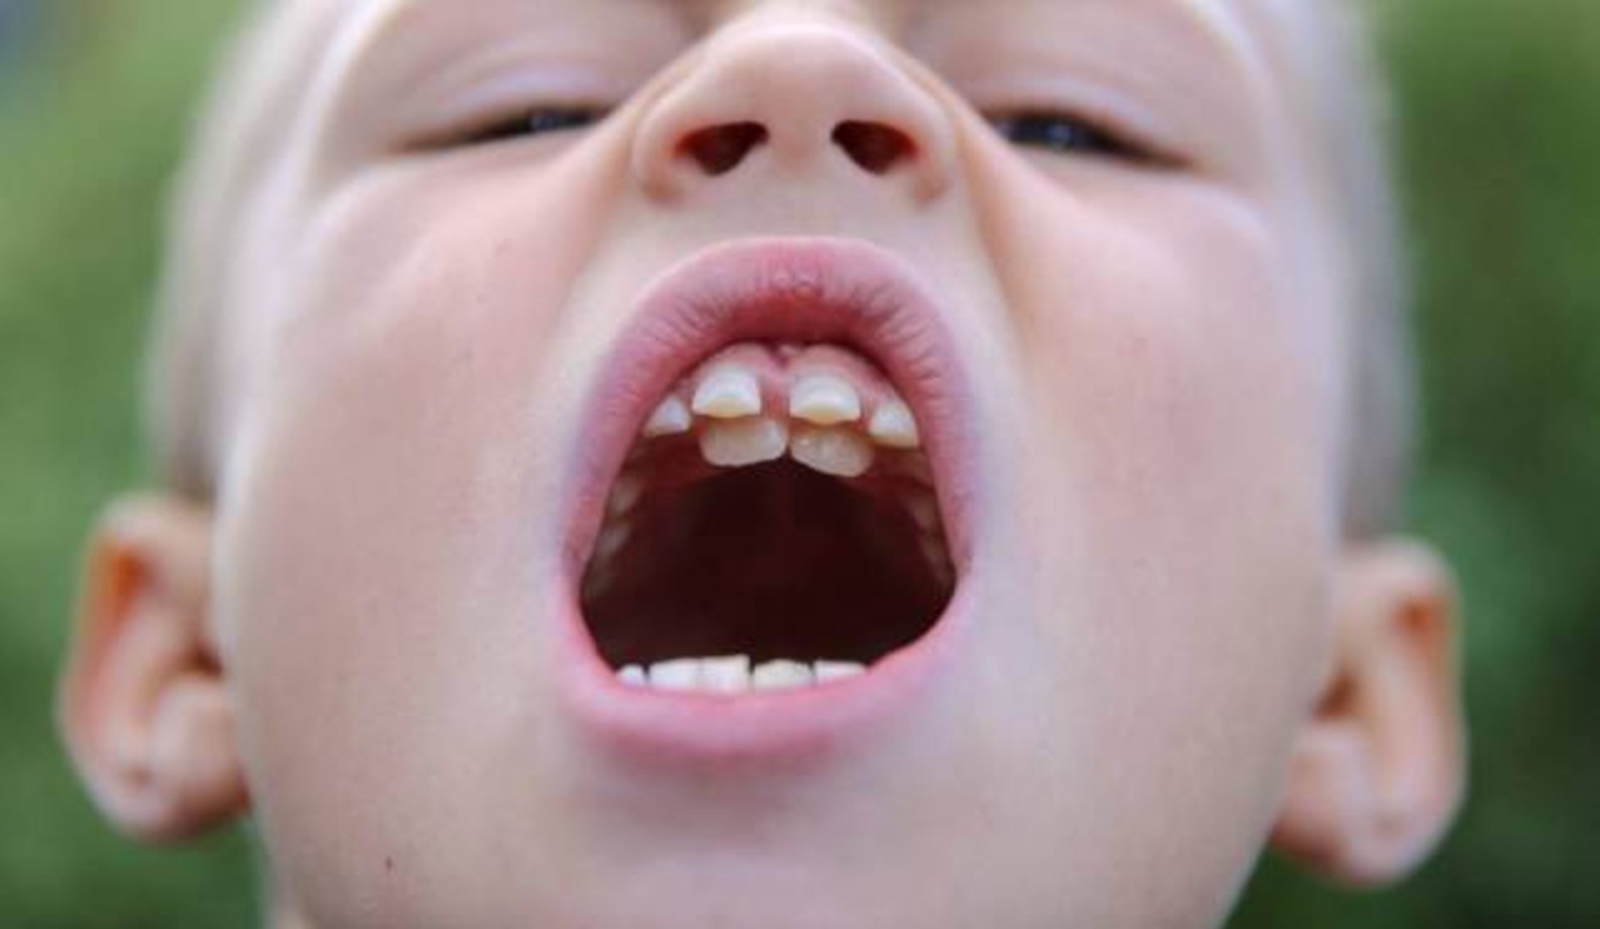  Răng số 2 mọc lệch - Nguyên nhân và cách xử lý hiệu quả